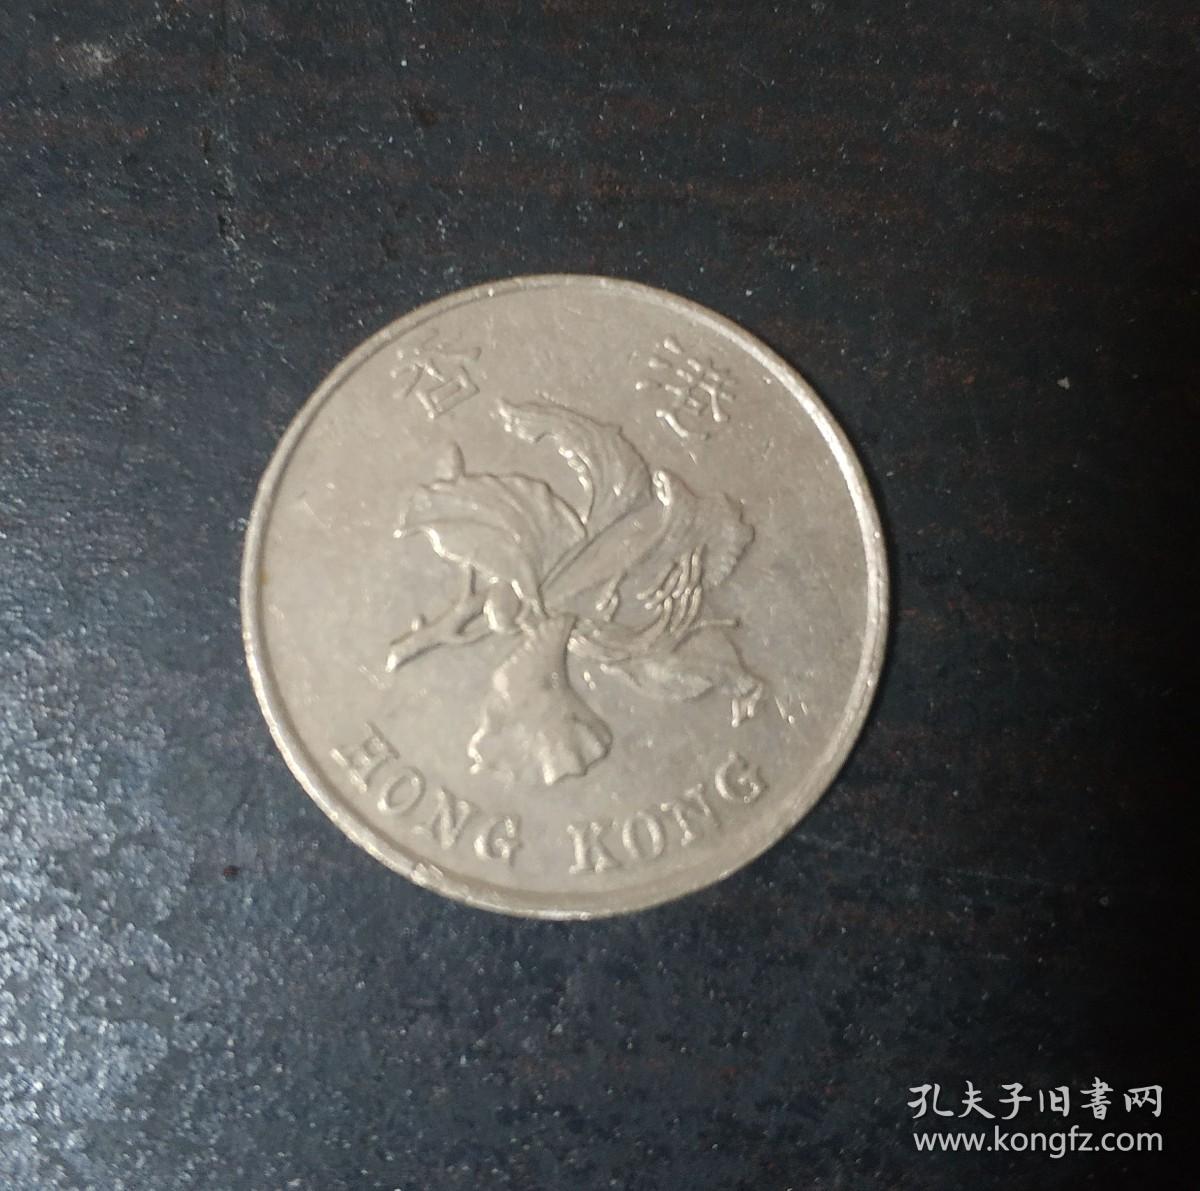 1995年 港币1元